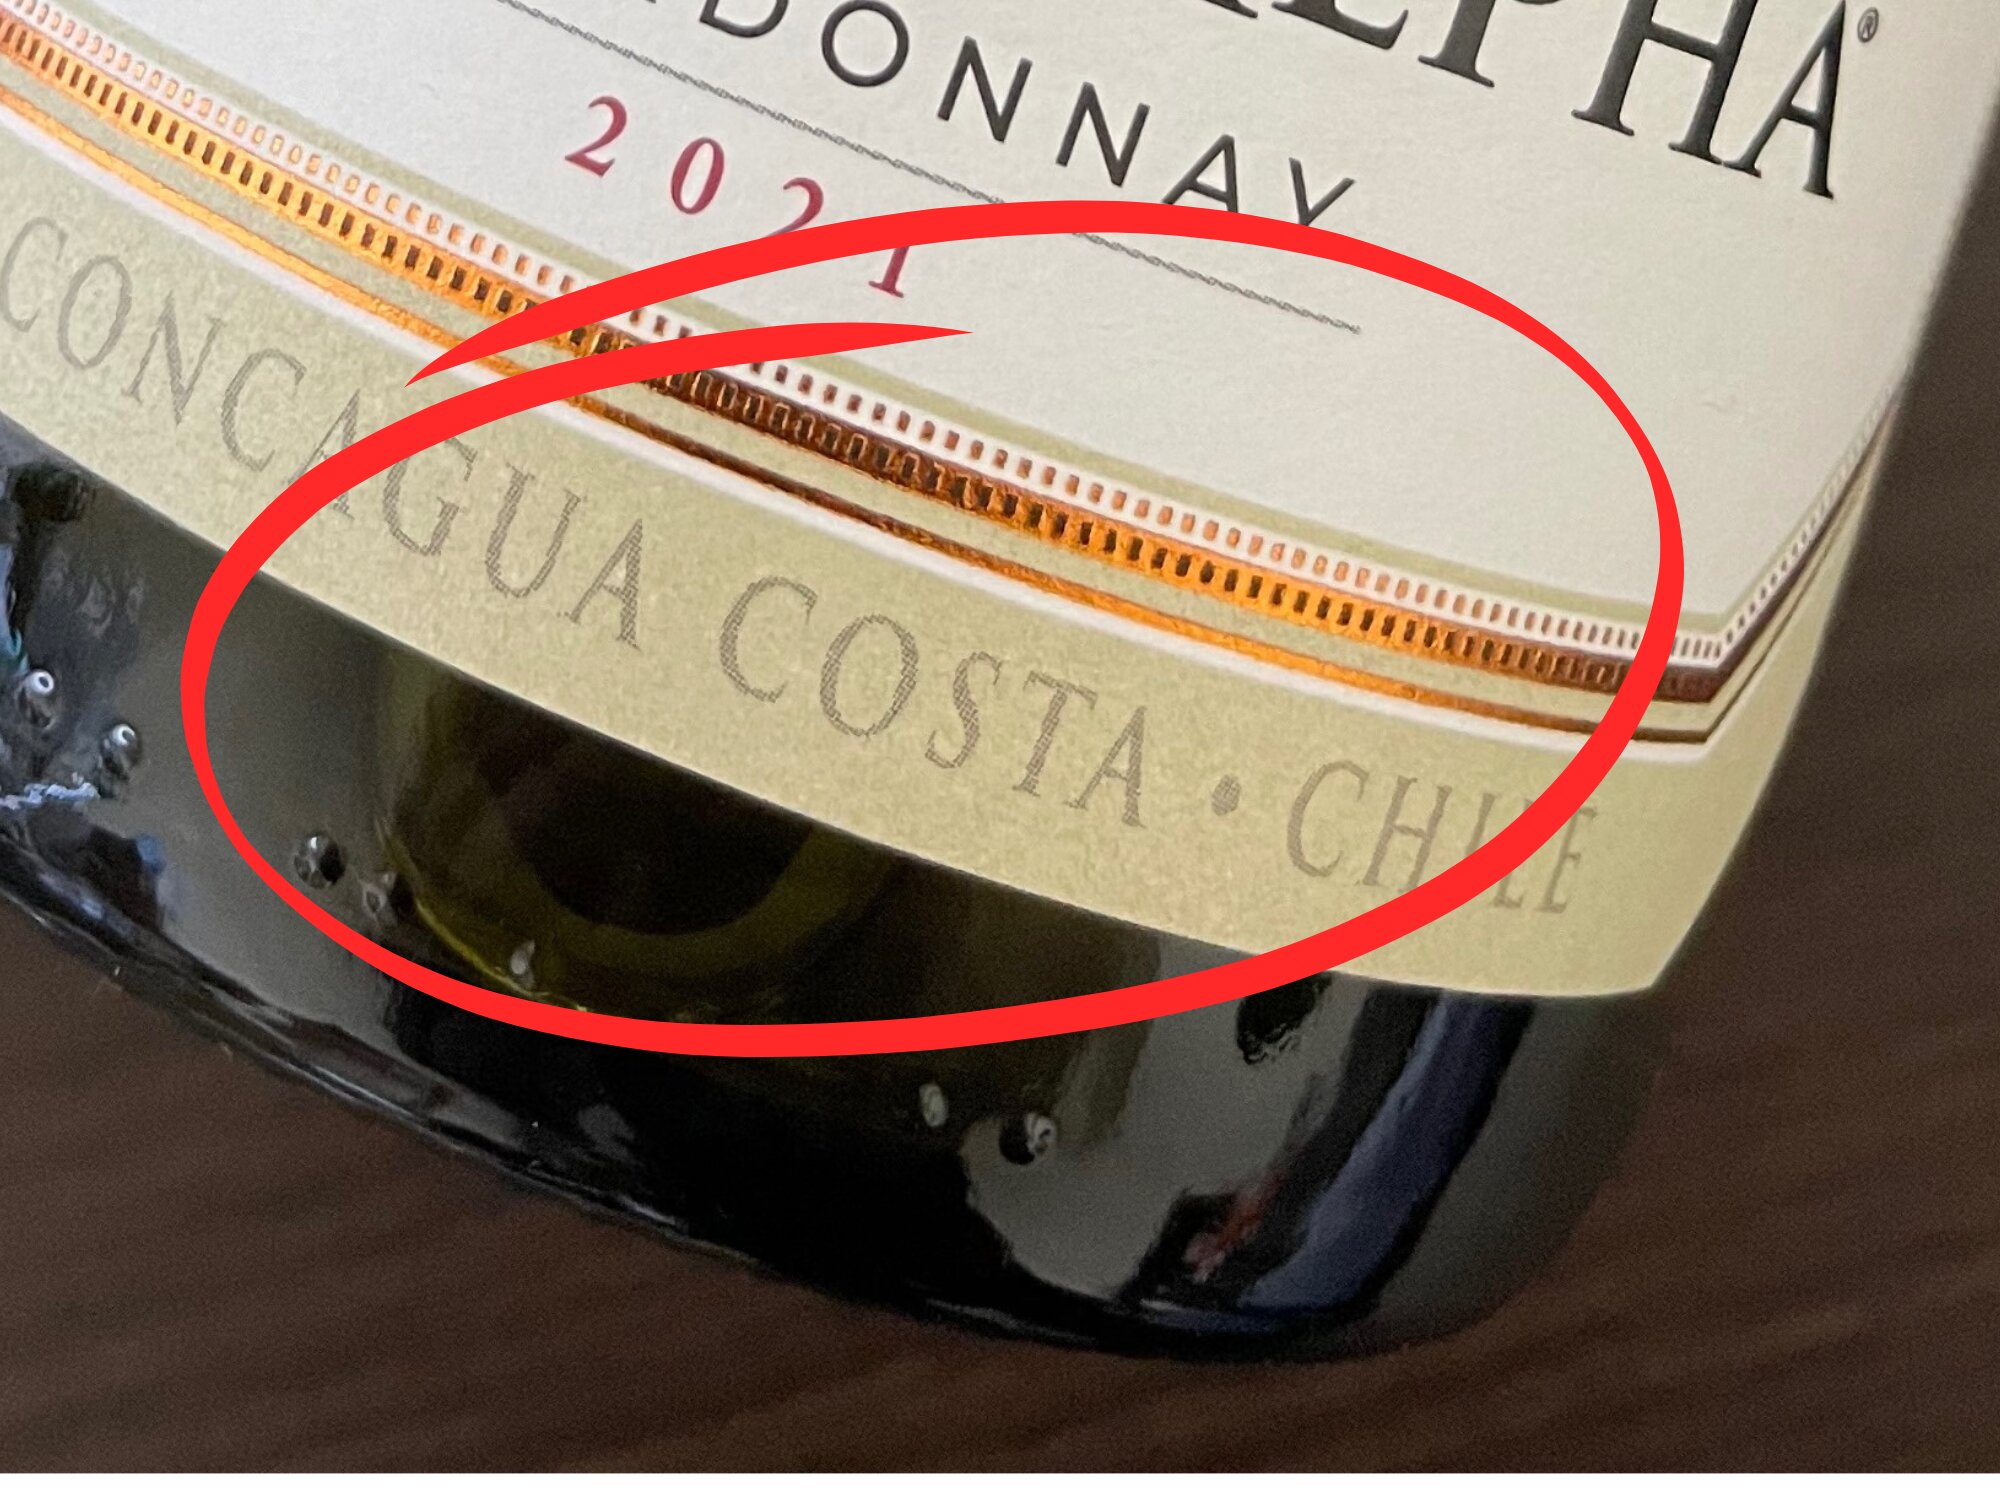 COSTA（海寄り）産地のワイン、と記してある